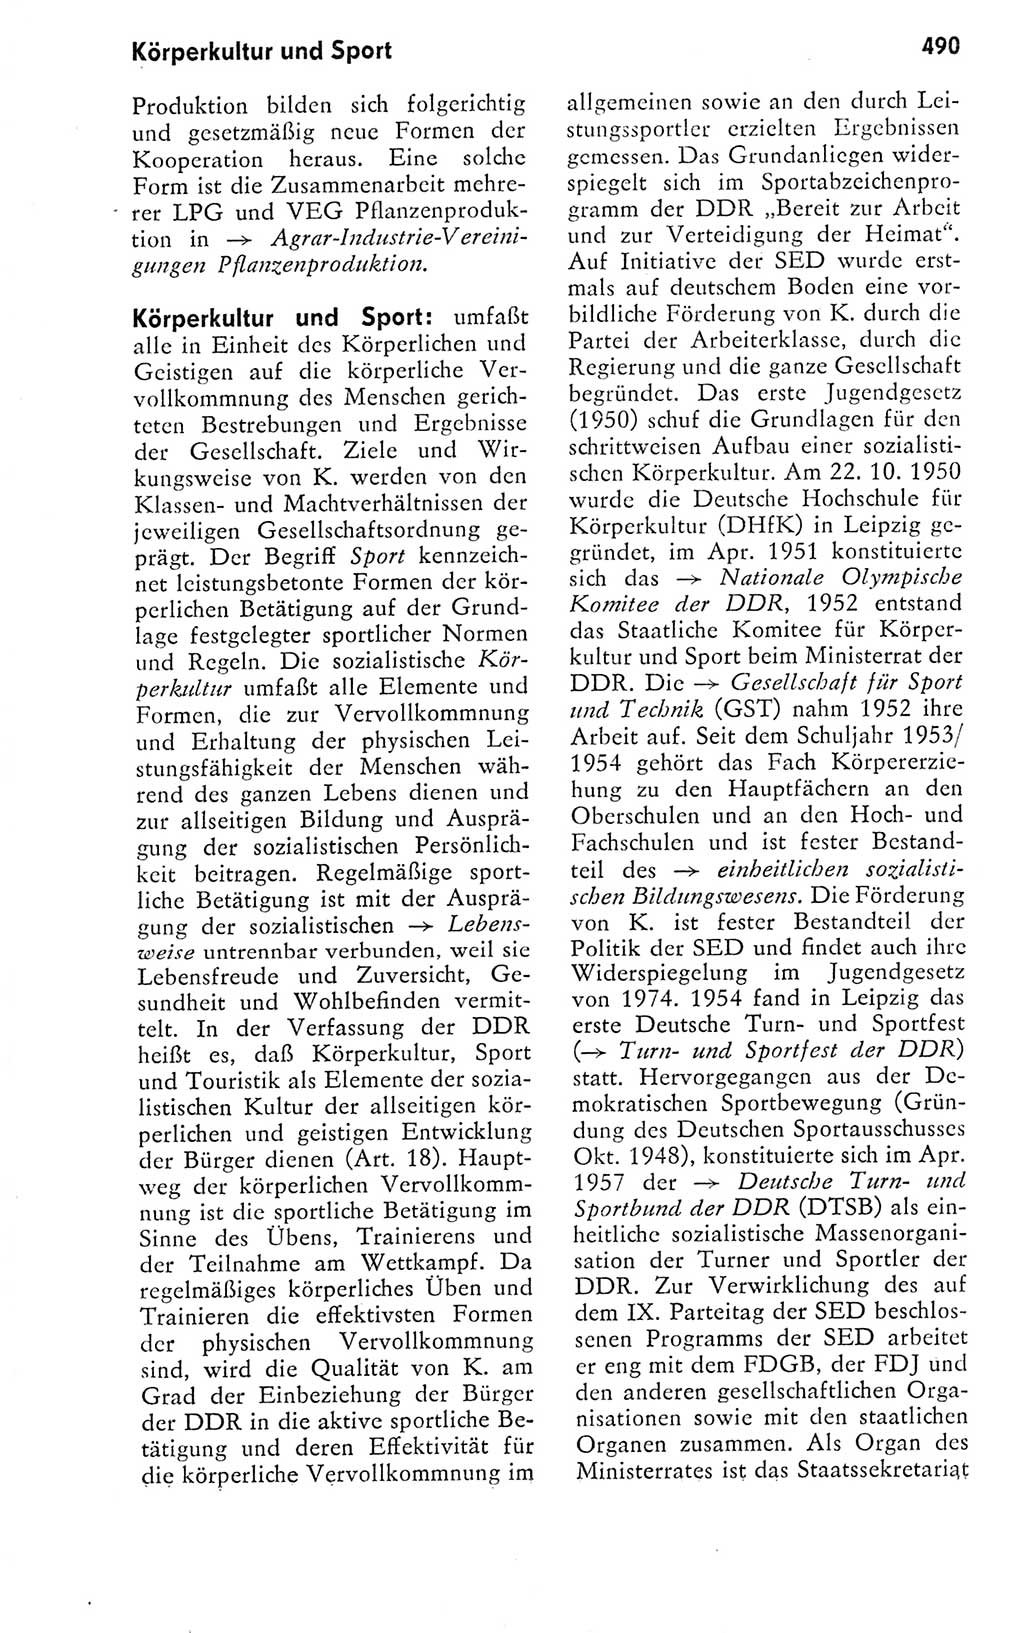 Kleines politisches Wörterbuch [Deutsche Demokratische Republik (DDR)] 1978, Seite 490 (Kl. pol. Wb. DDR 1978, S. 490)